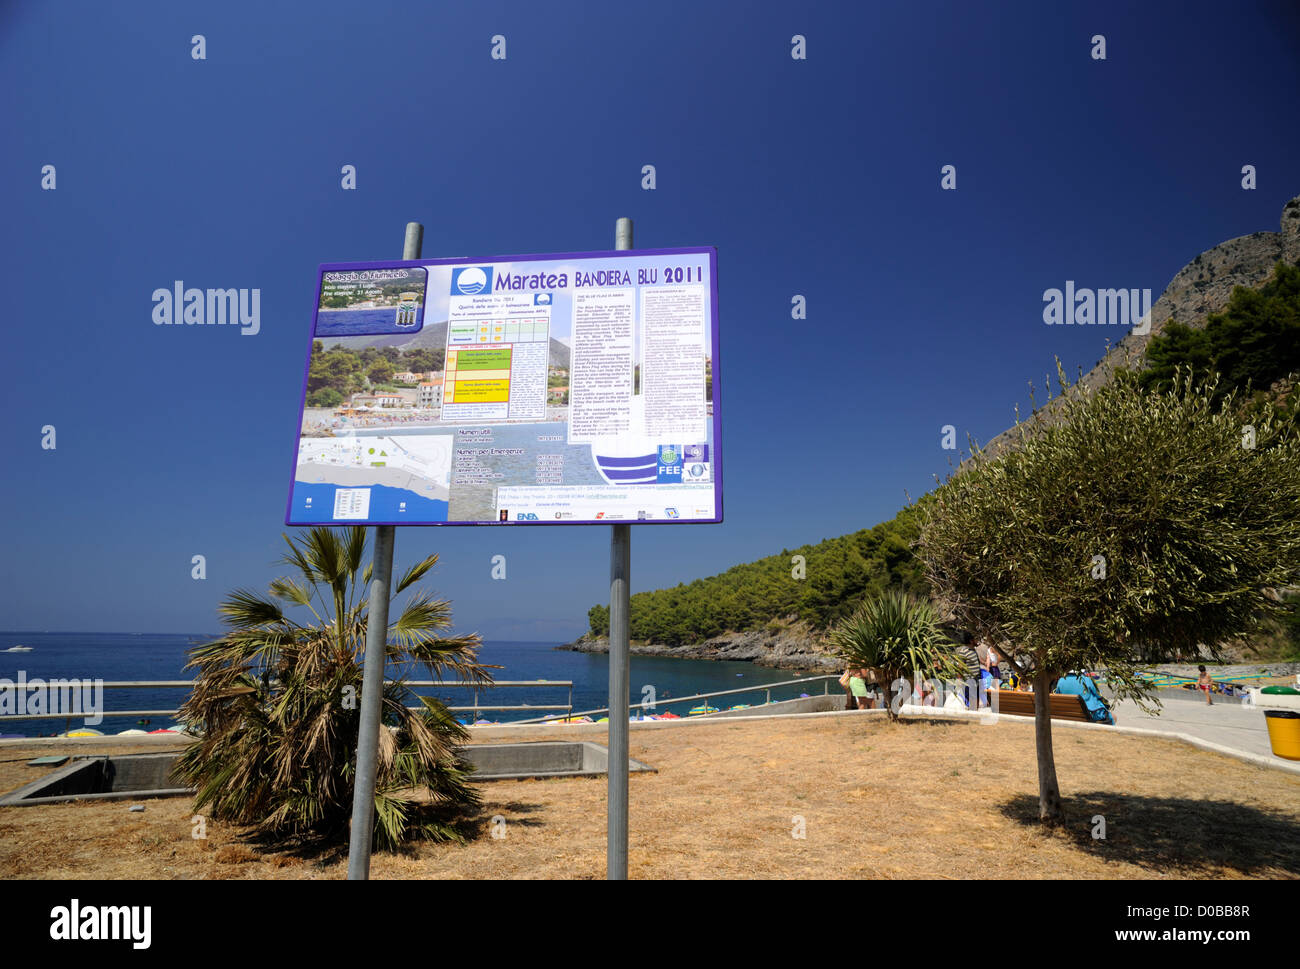 Italie, Basilicate, Maratea, plage de Fiumicello, panneau 'bandiera blu' (drapeau bleu pour les plus belles plages d'Italie) Banque D'Images